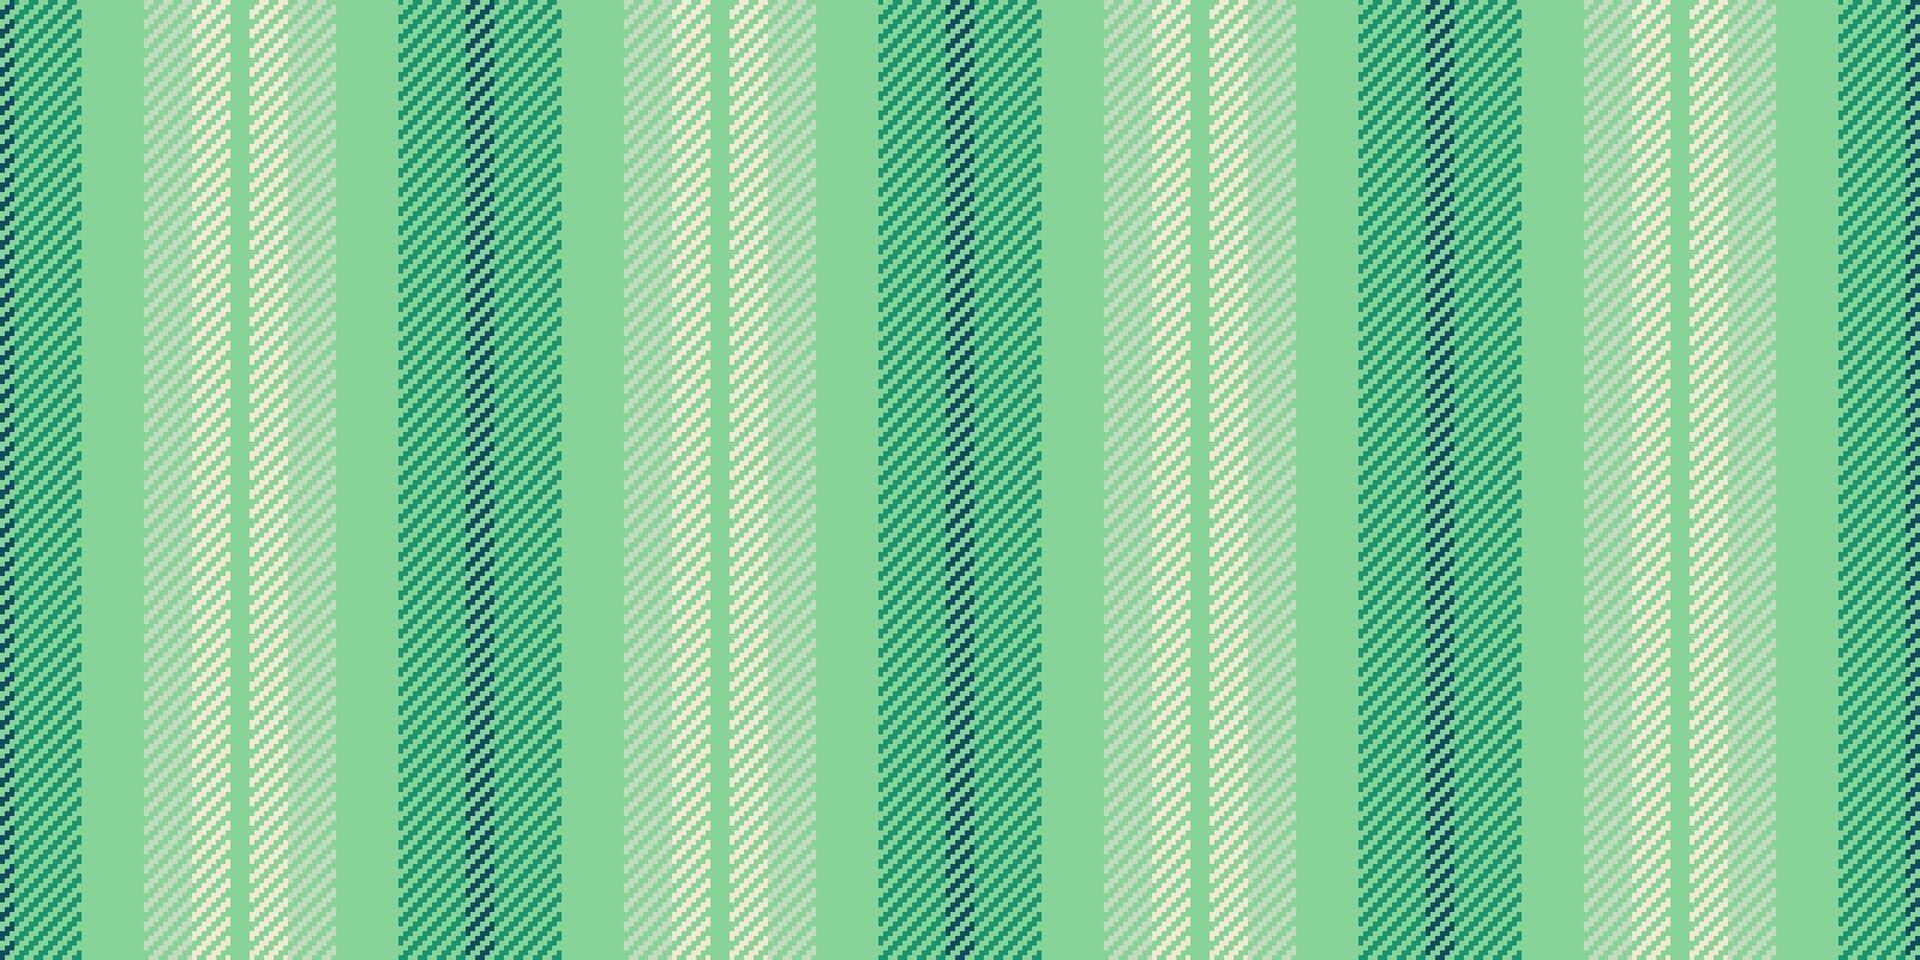 fyrkant mönster vertikal textil, kalk textur rand rader. service tyg vektor sömlös bakgrund i grön och ljus färger.